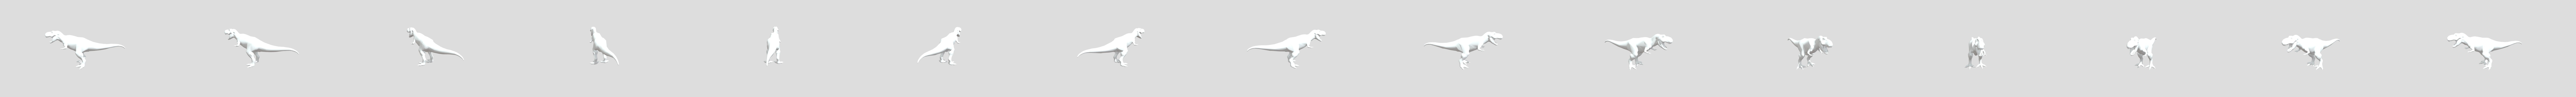 T-rex Dinosaur Runner - 3D model by Chris Morris (@dino-game